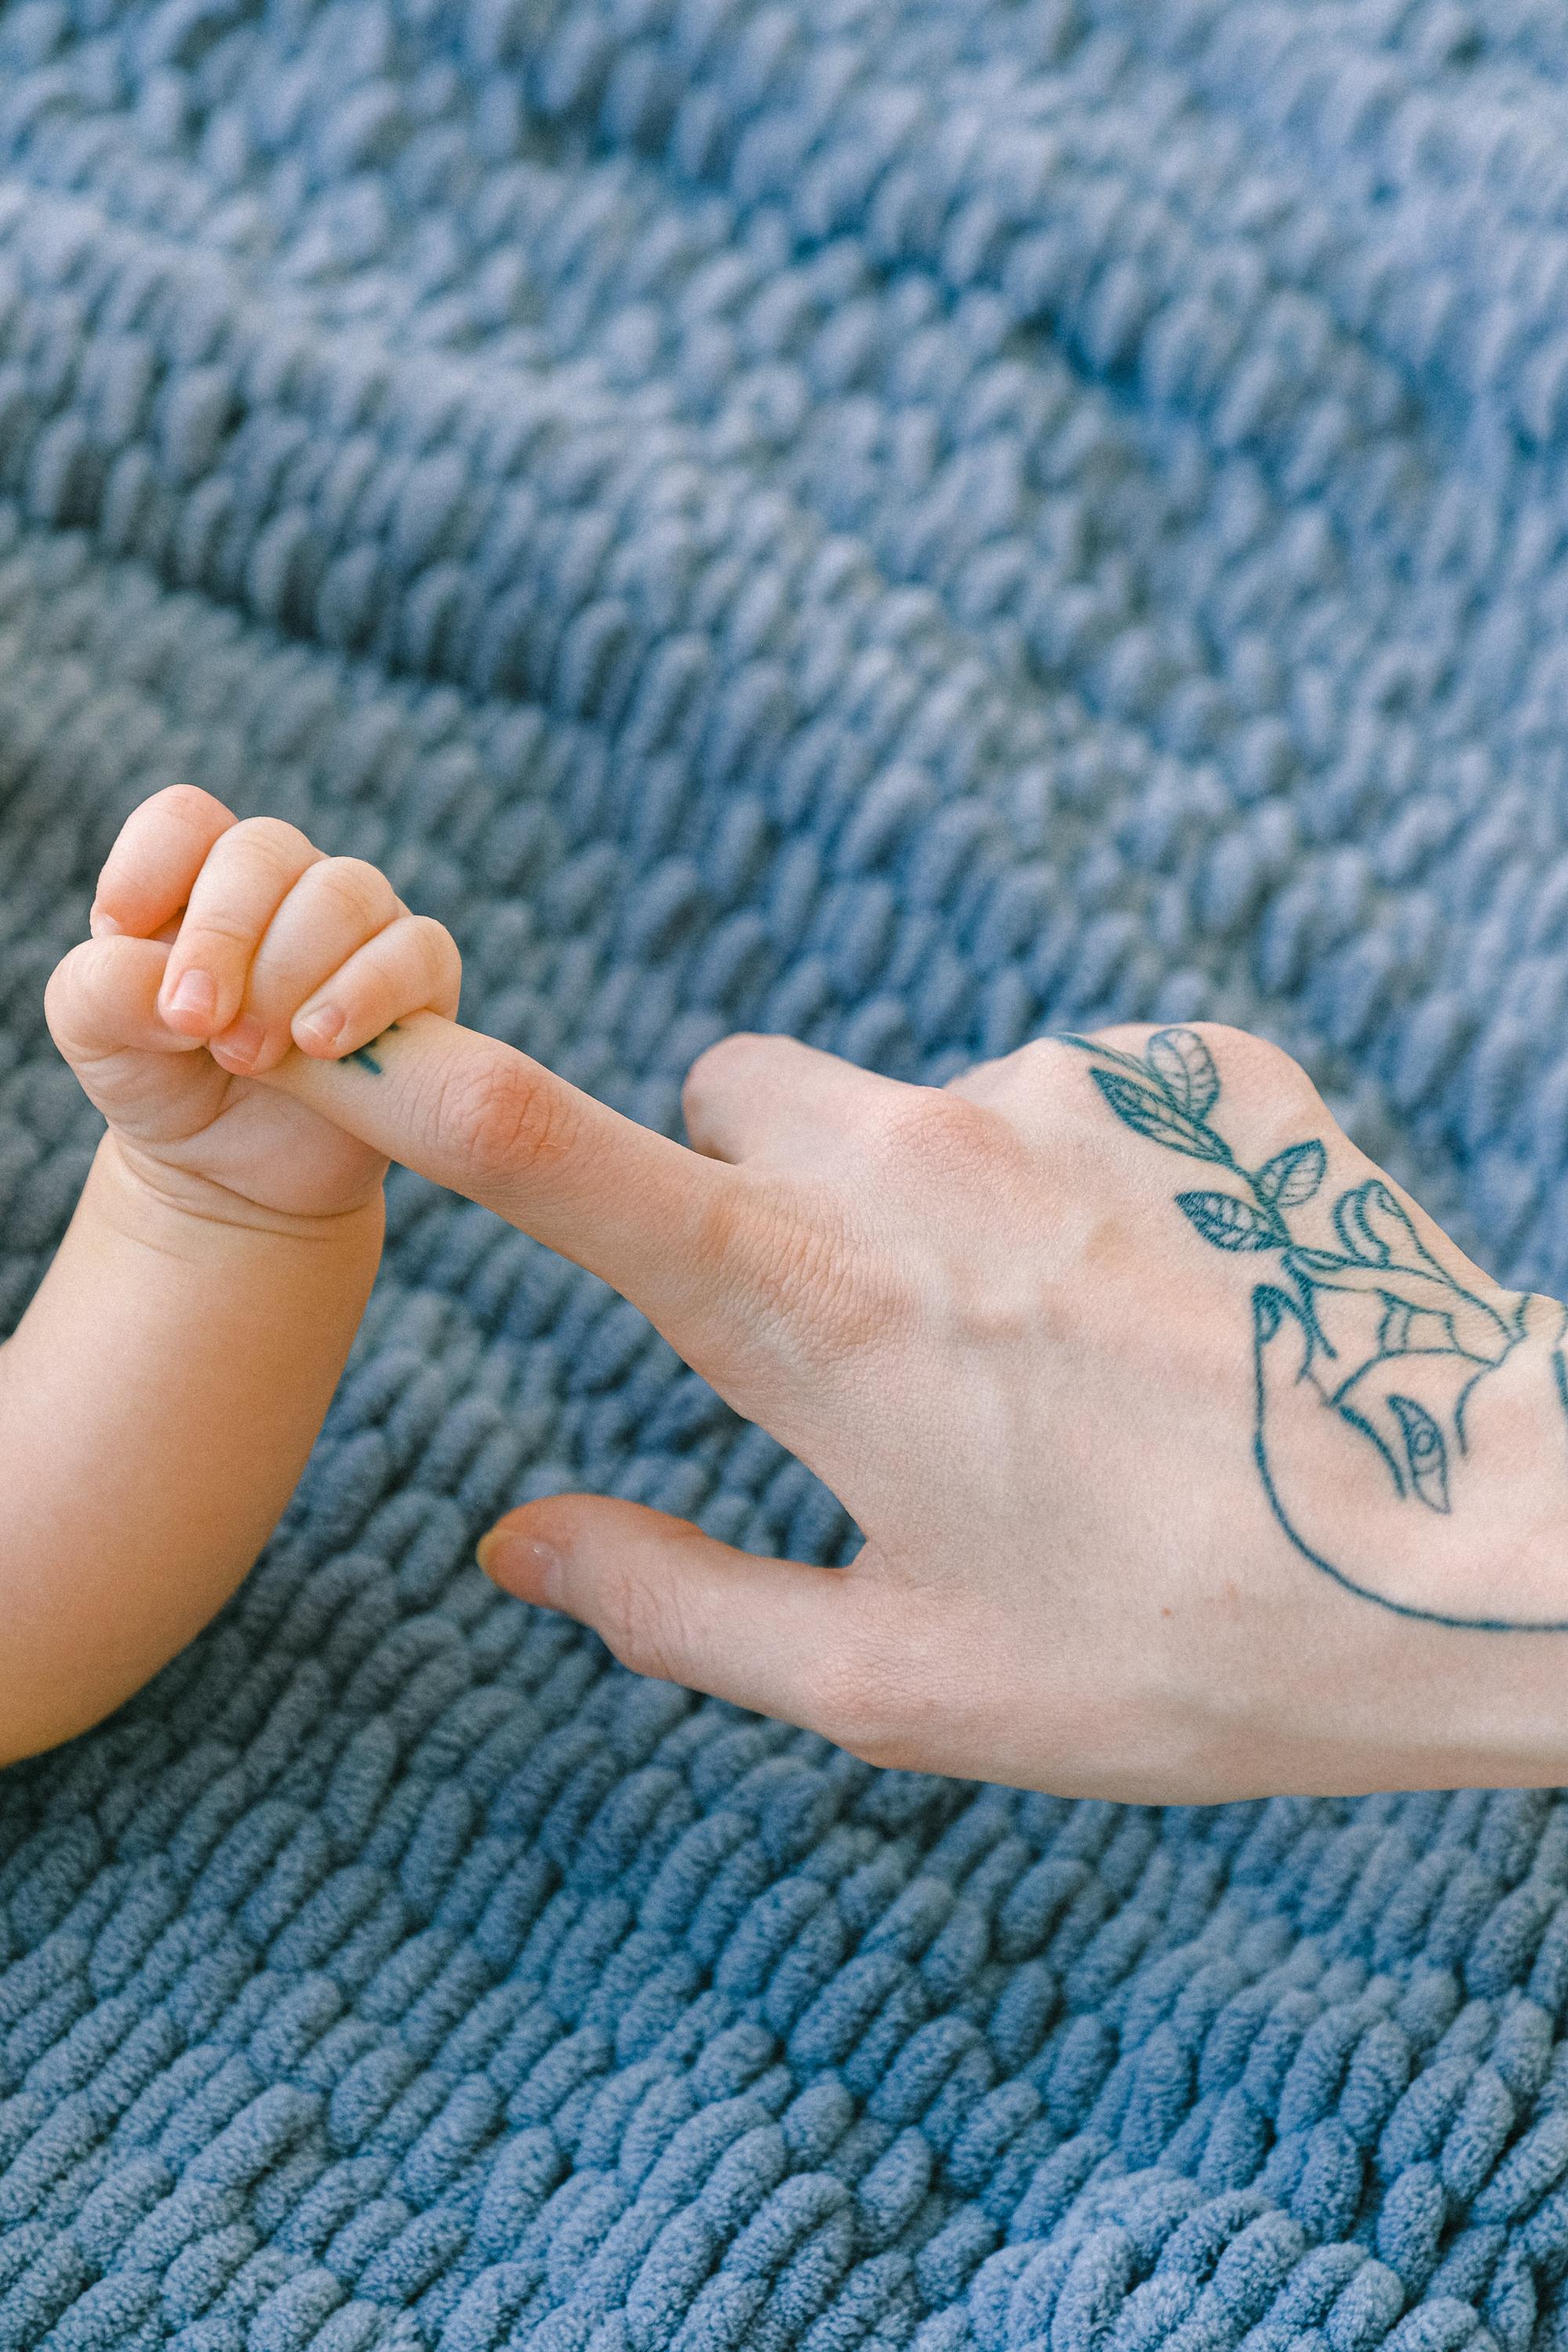 Materiały idealne dla skóry niemowlaka – przegląd najbardziej komfortowych tkanin